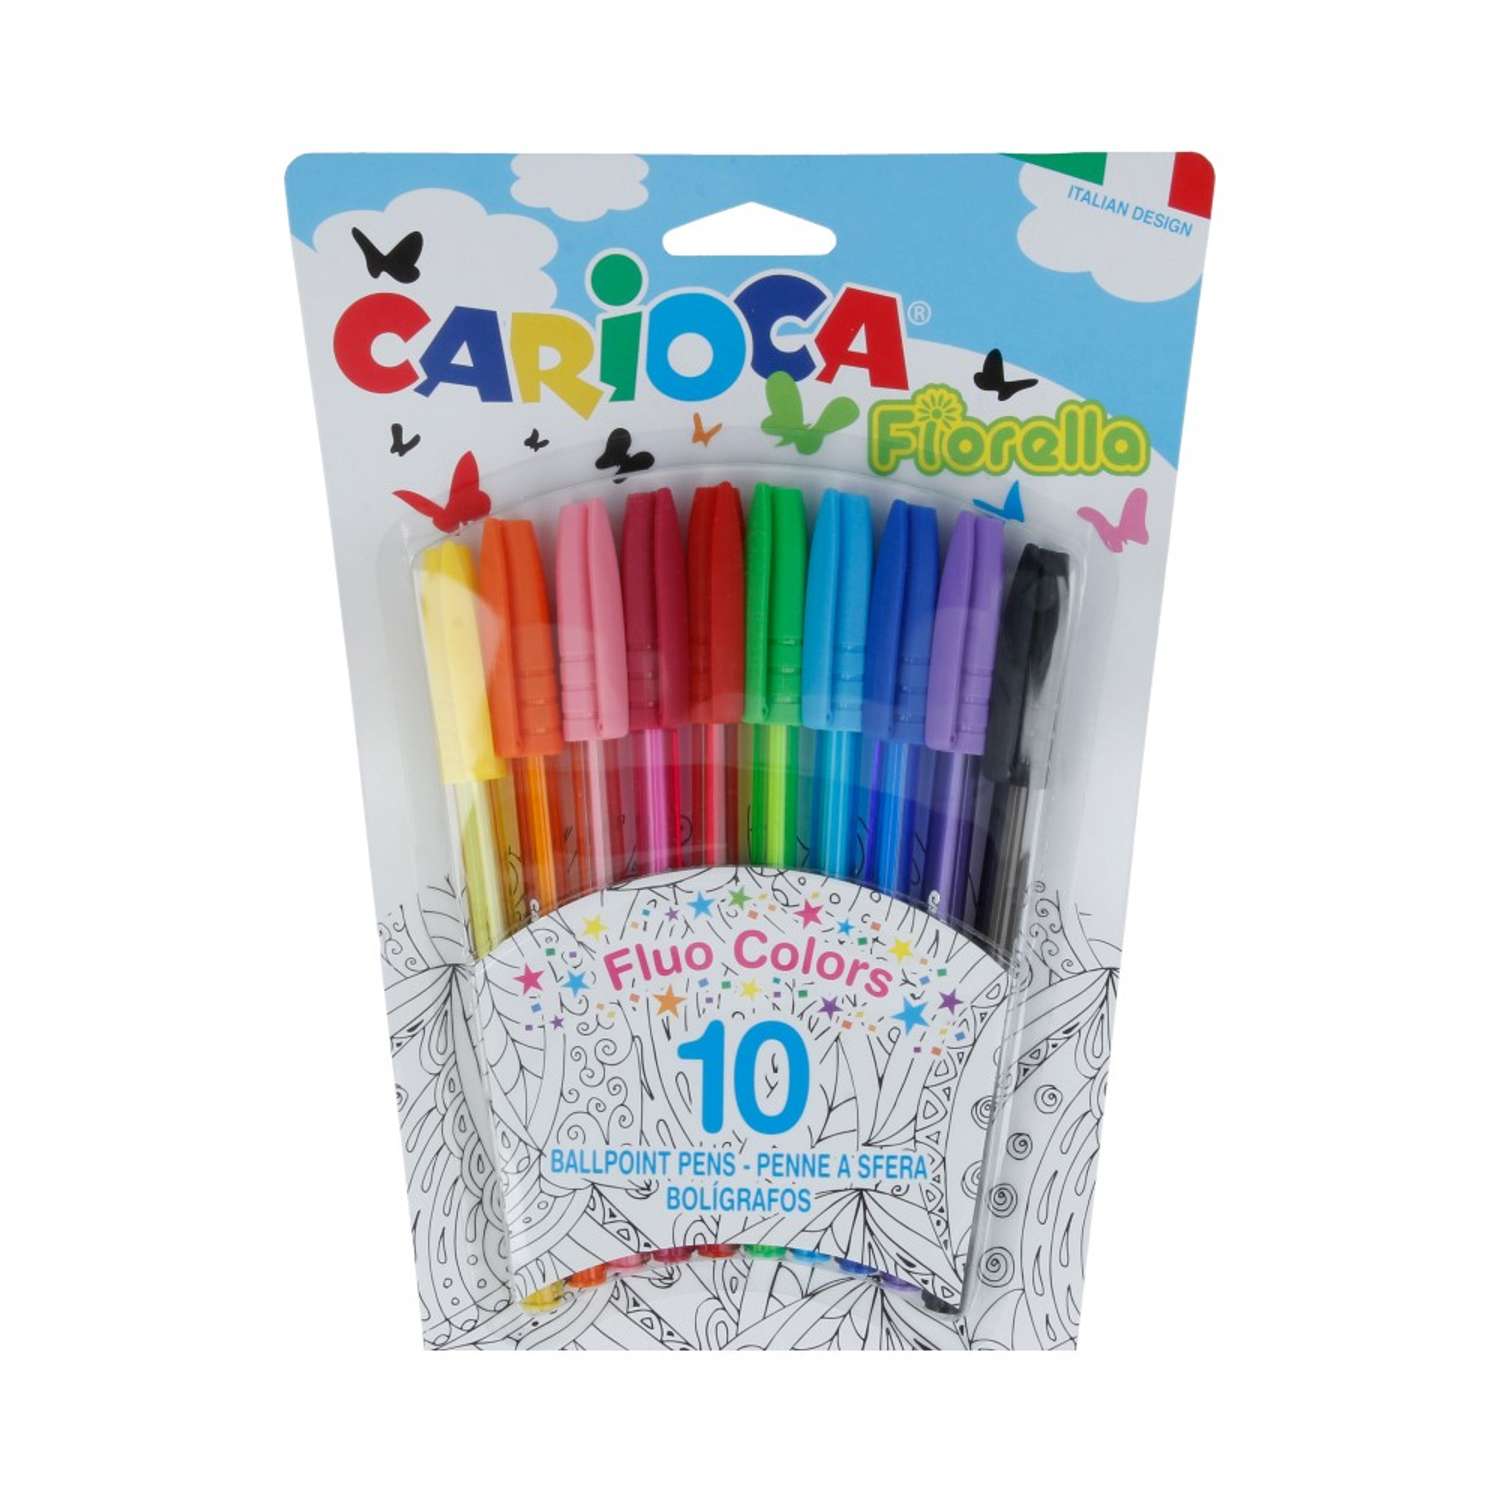 Набор шариковых ручек CARIOCA Fiorella 1 мм 10 шт. 42775 флуоресцентные цвета - фото 1